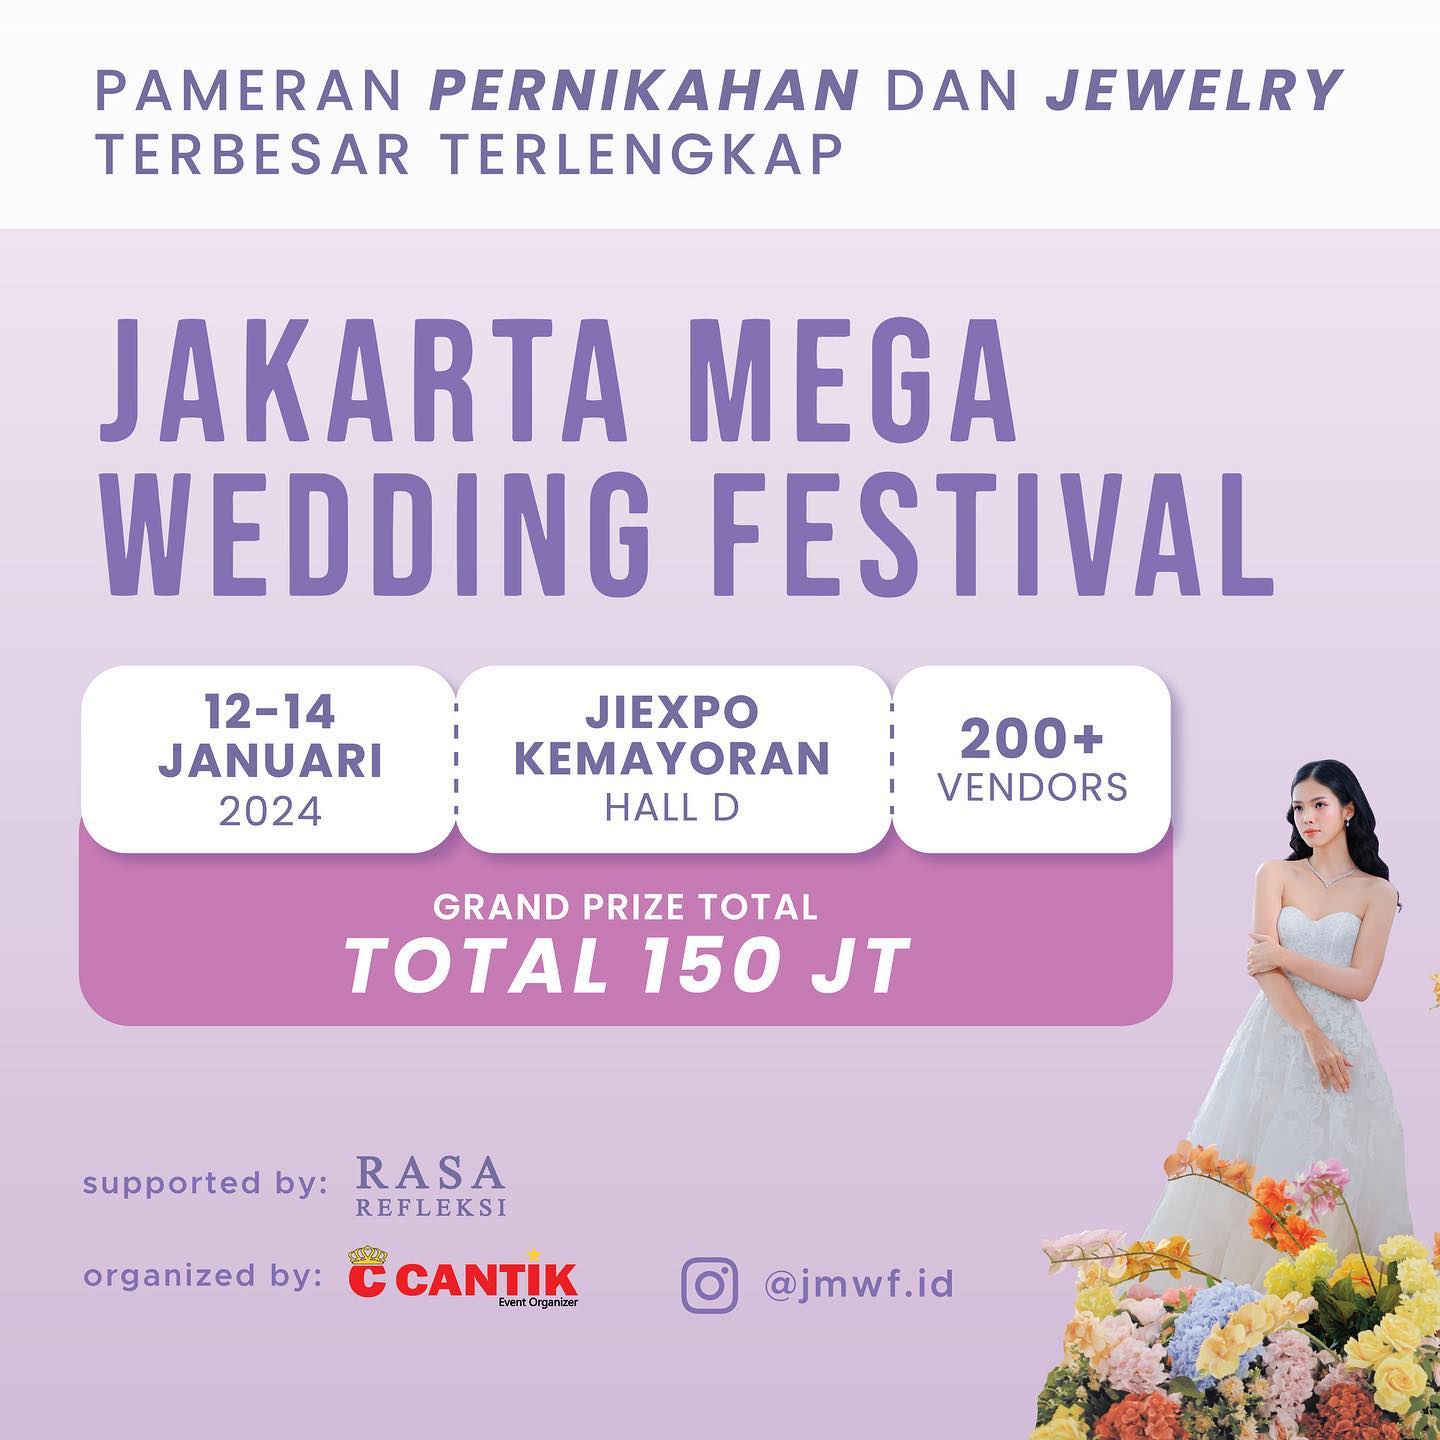 Jakarta Mega Wedding Festival 2024 Pameran Pernikahan Impian di JIExpo